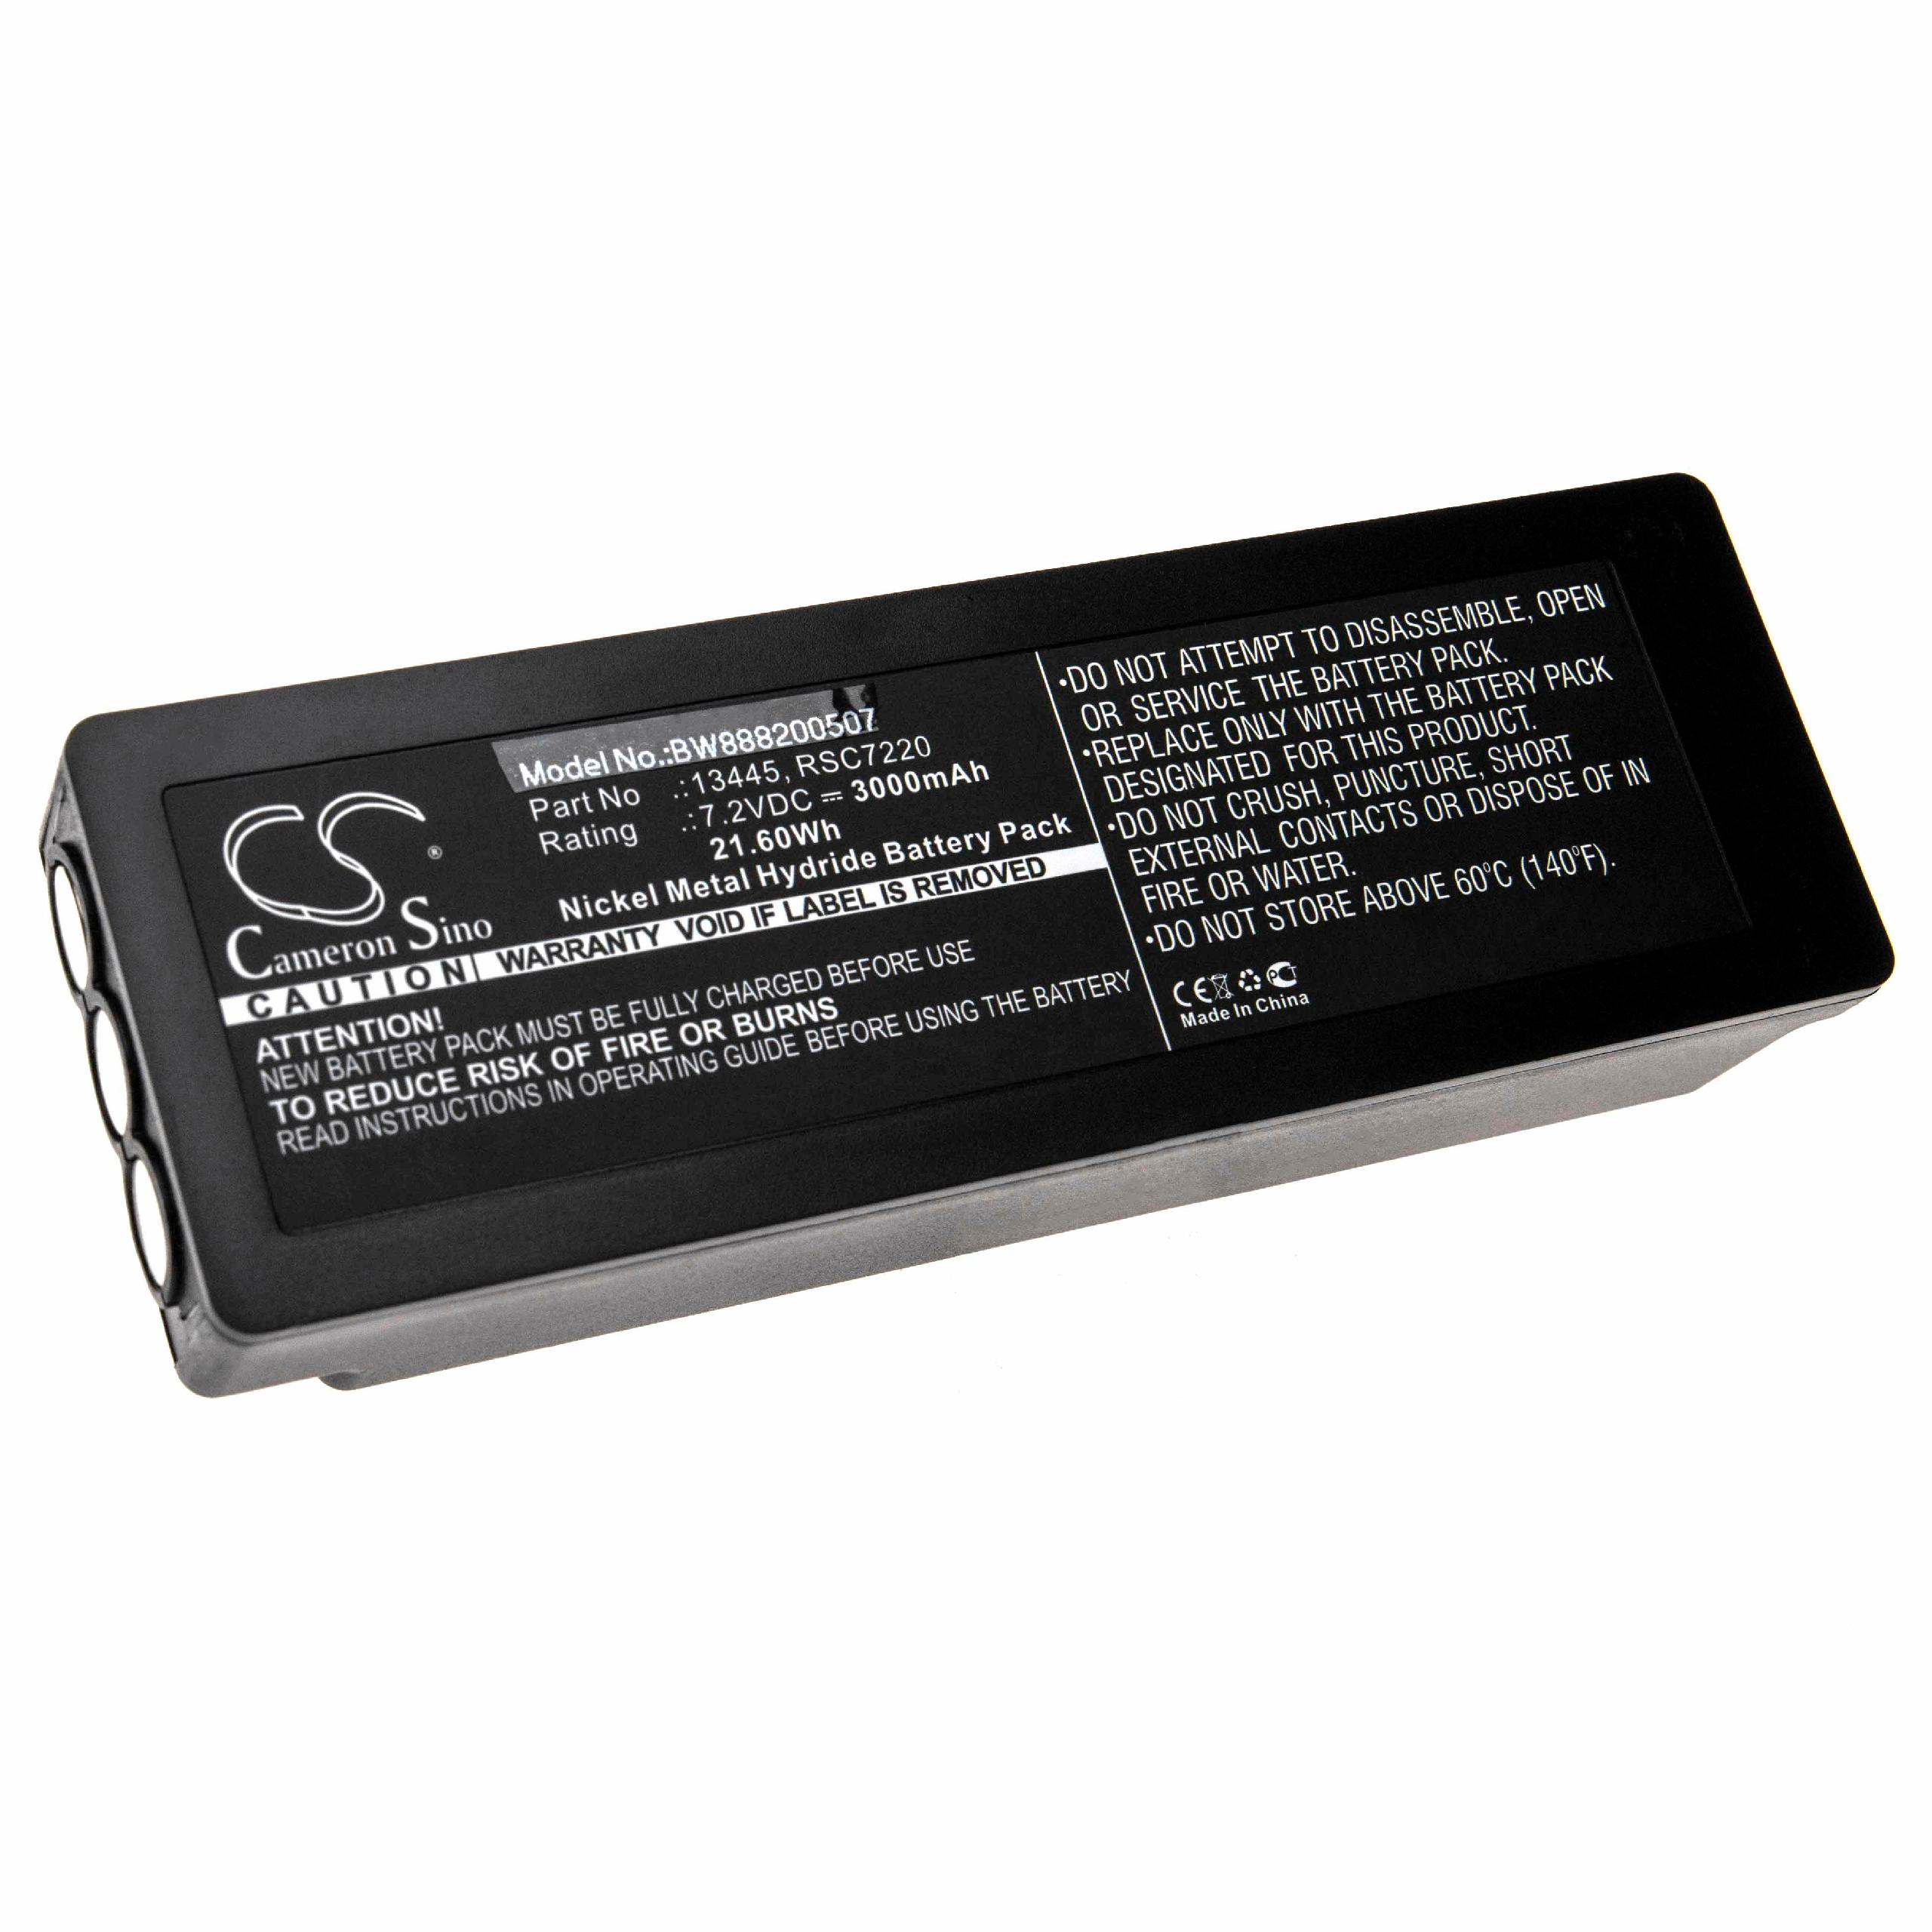 Batterie remplace Palfinger Scanreco 1026, 16131, 13445 pour télécomande industrielle - 3000mAh 7,2V NiMH